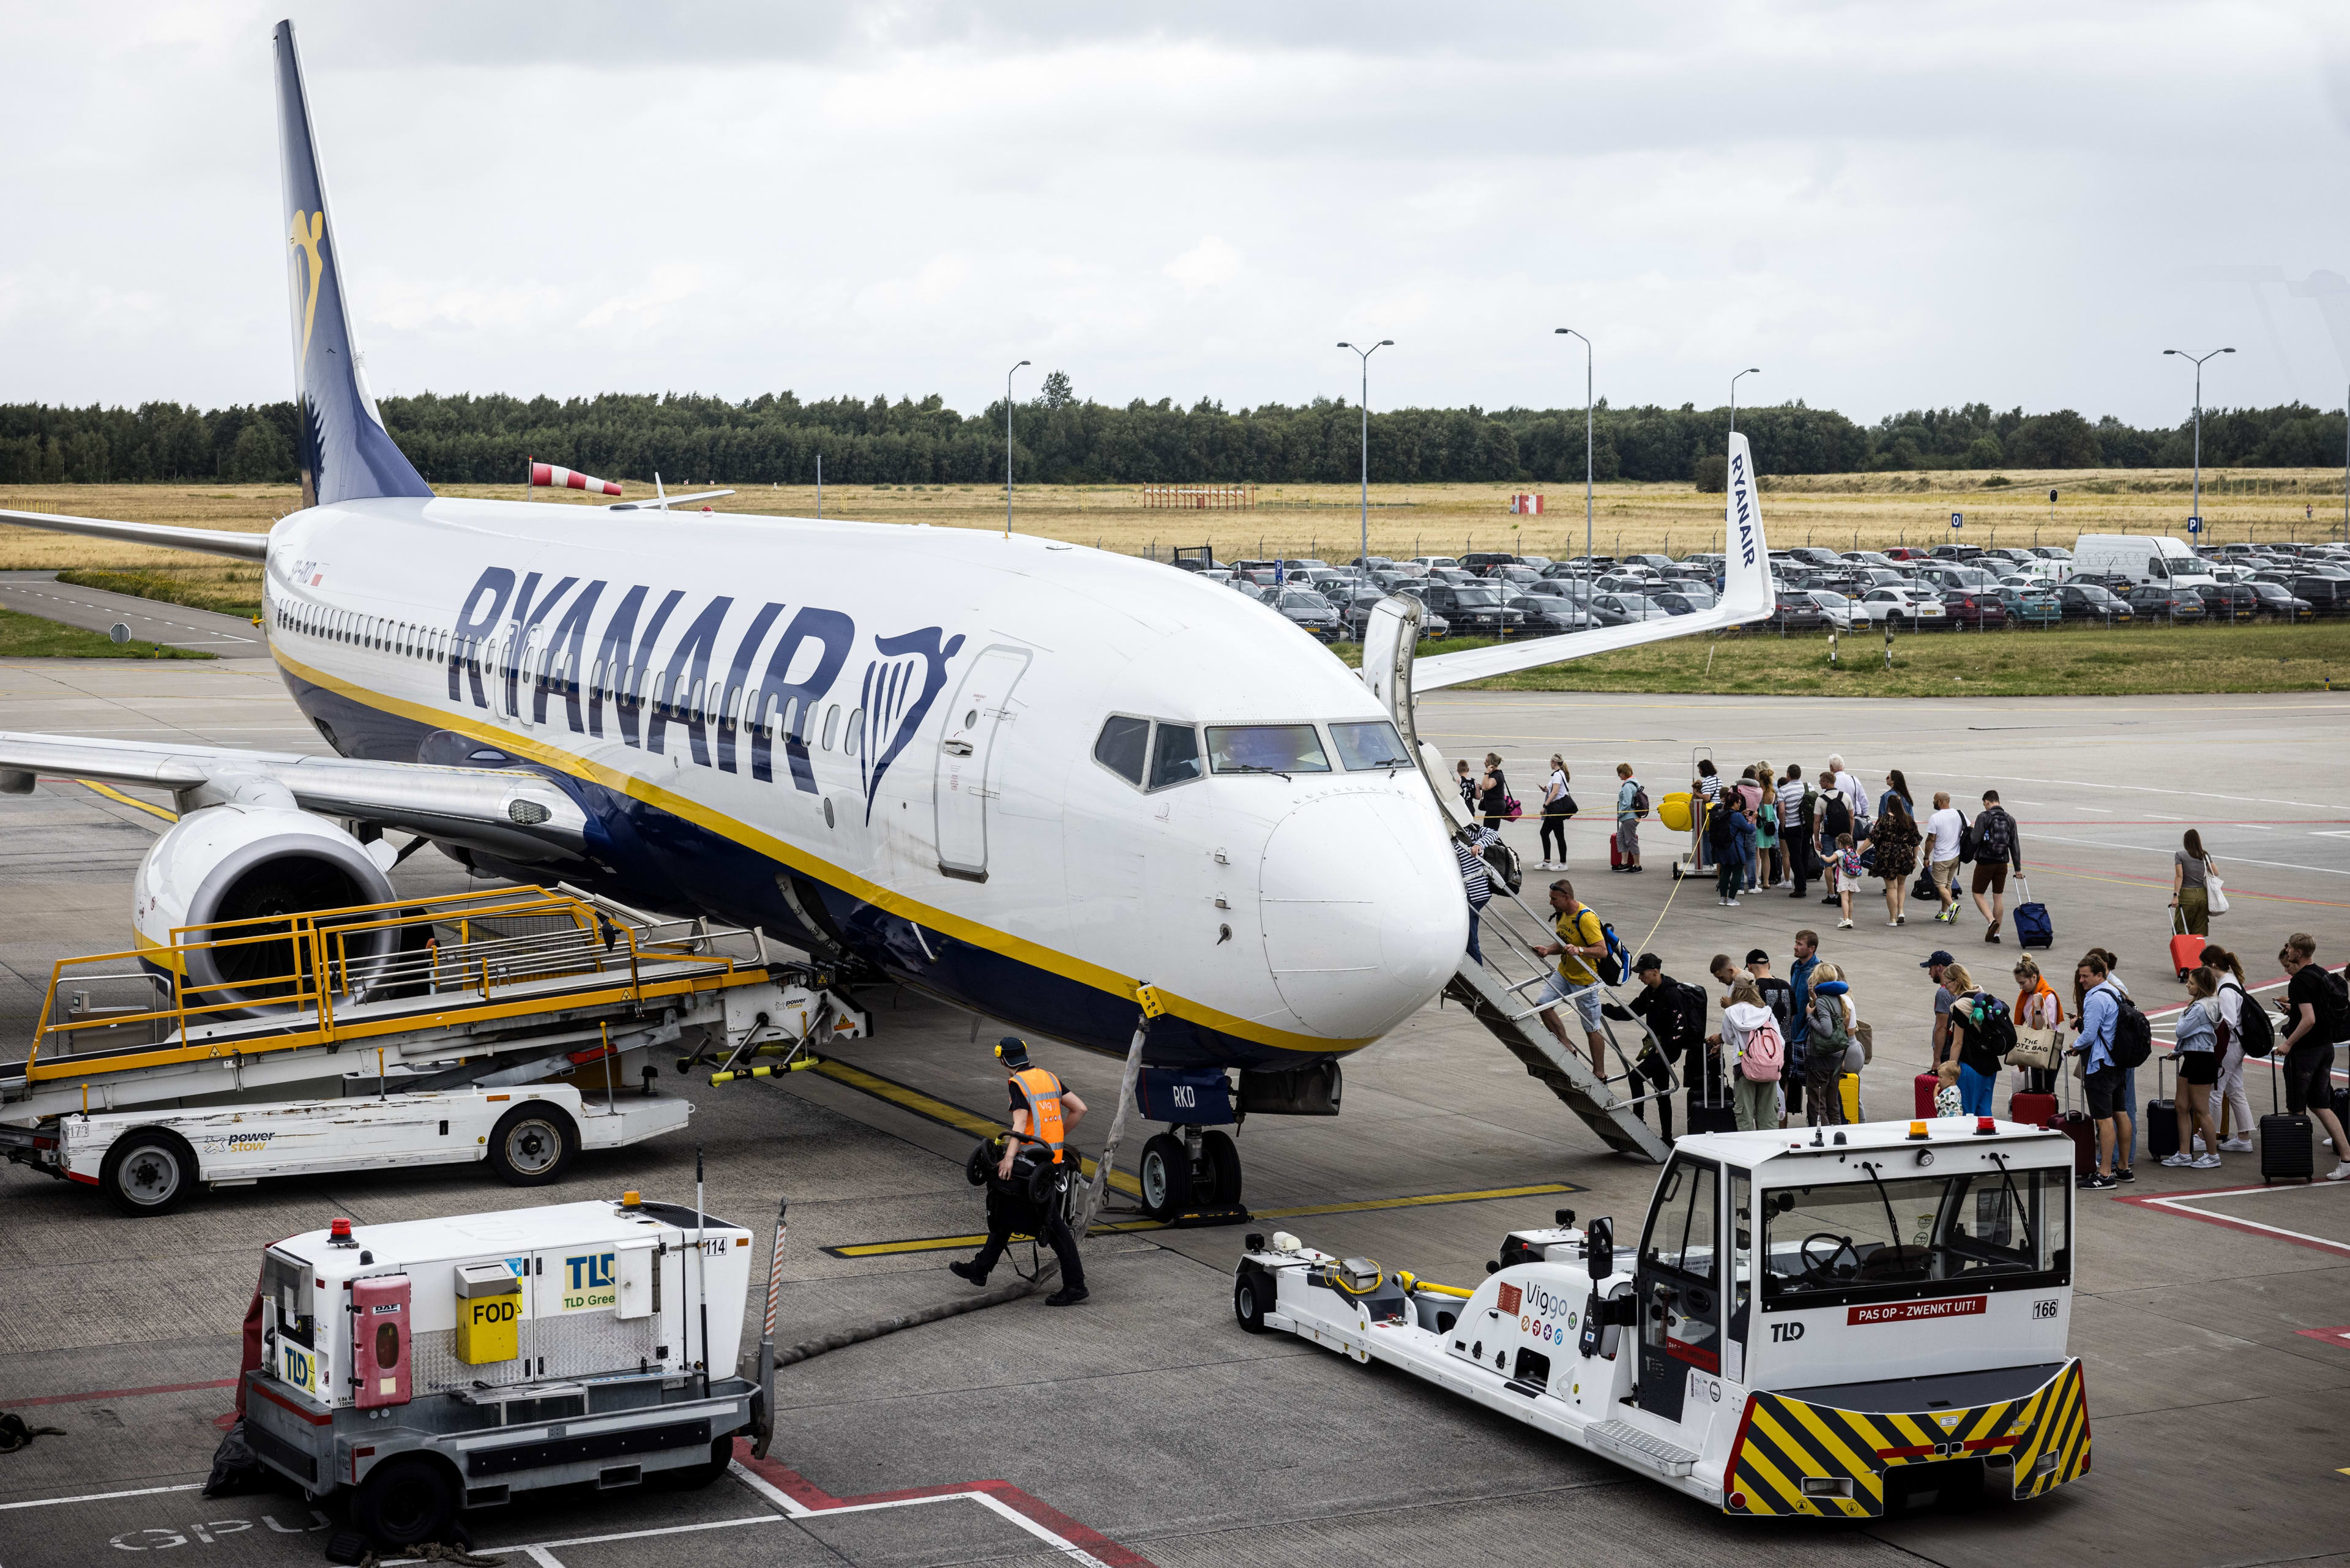 Vliegtickets Ryanair komende winter mogelijk goedkoper